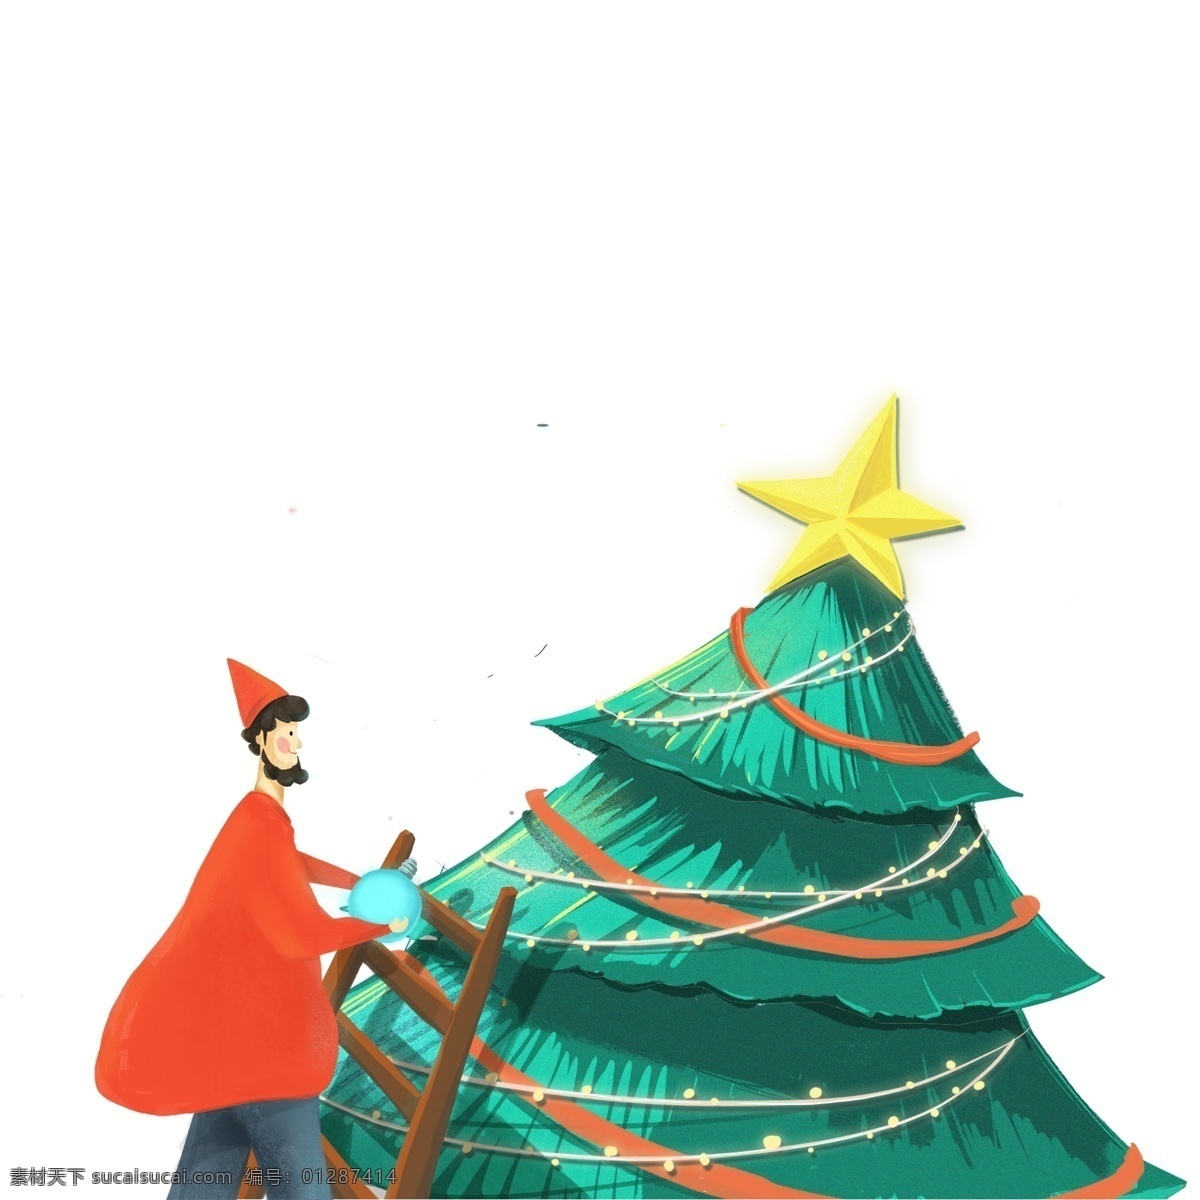 圣诞节 装饰 圣诞树 男人 简约 人物 星星 卡通 梯子 装饰设计